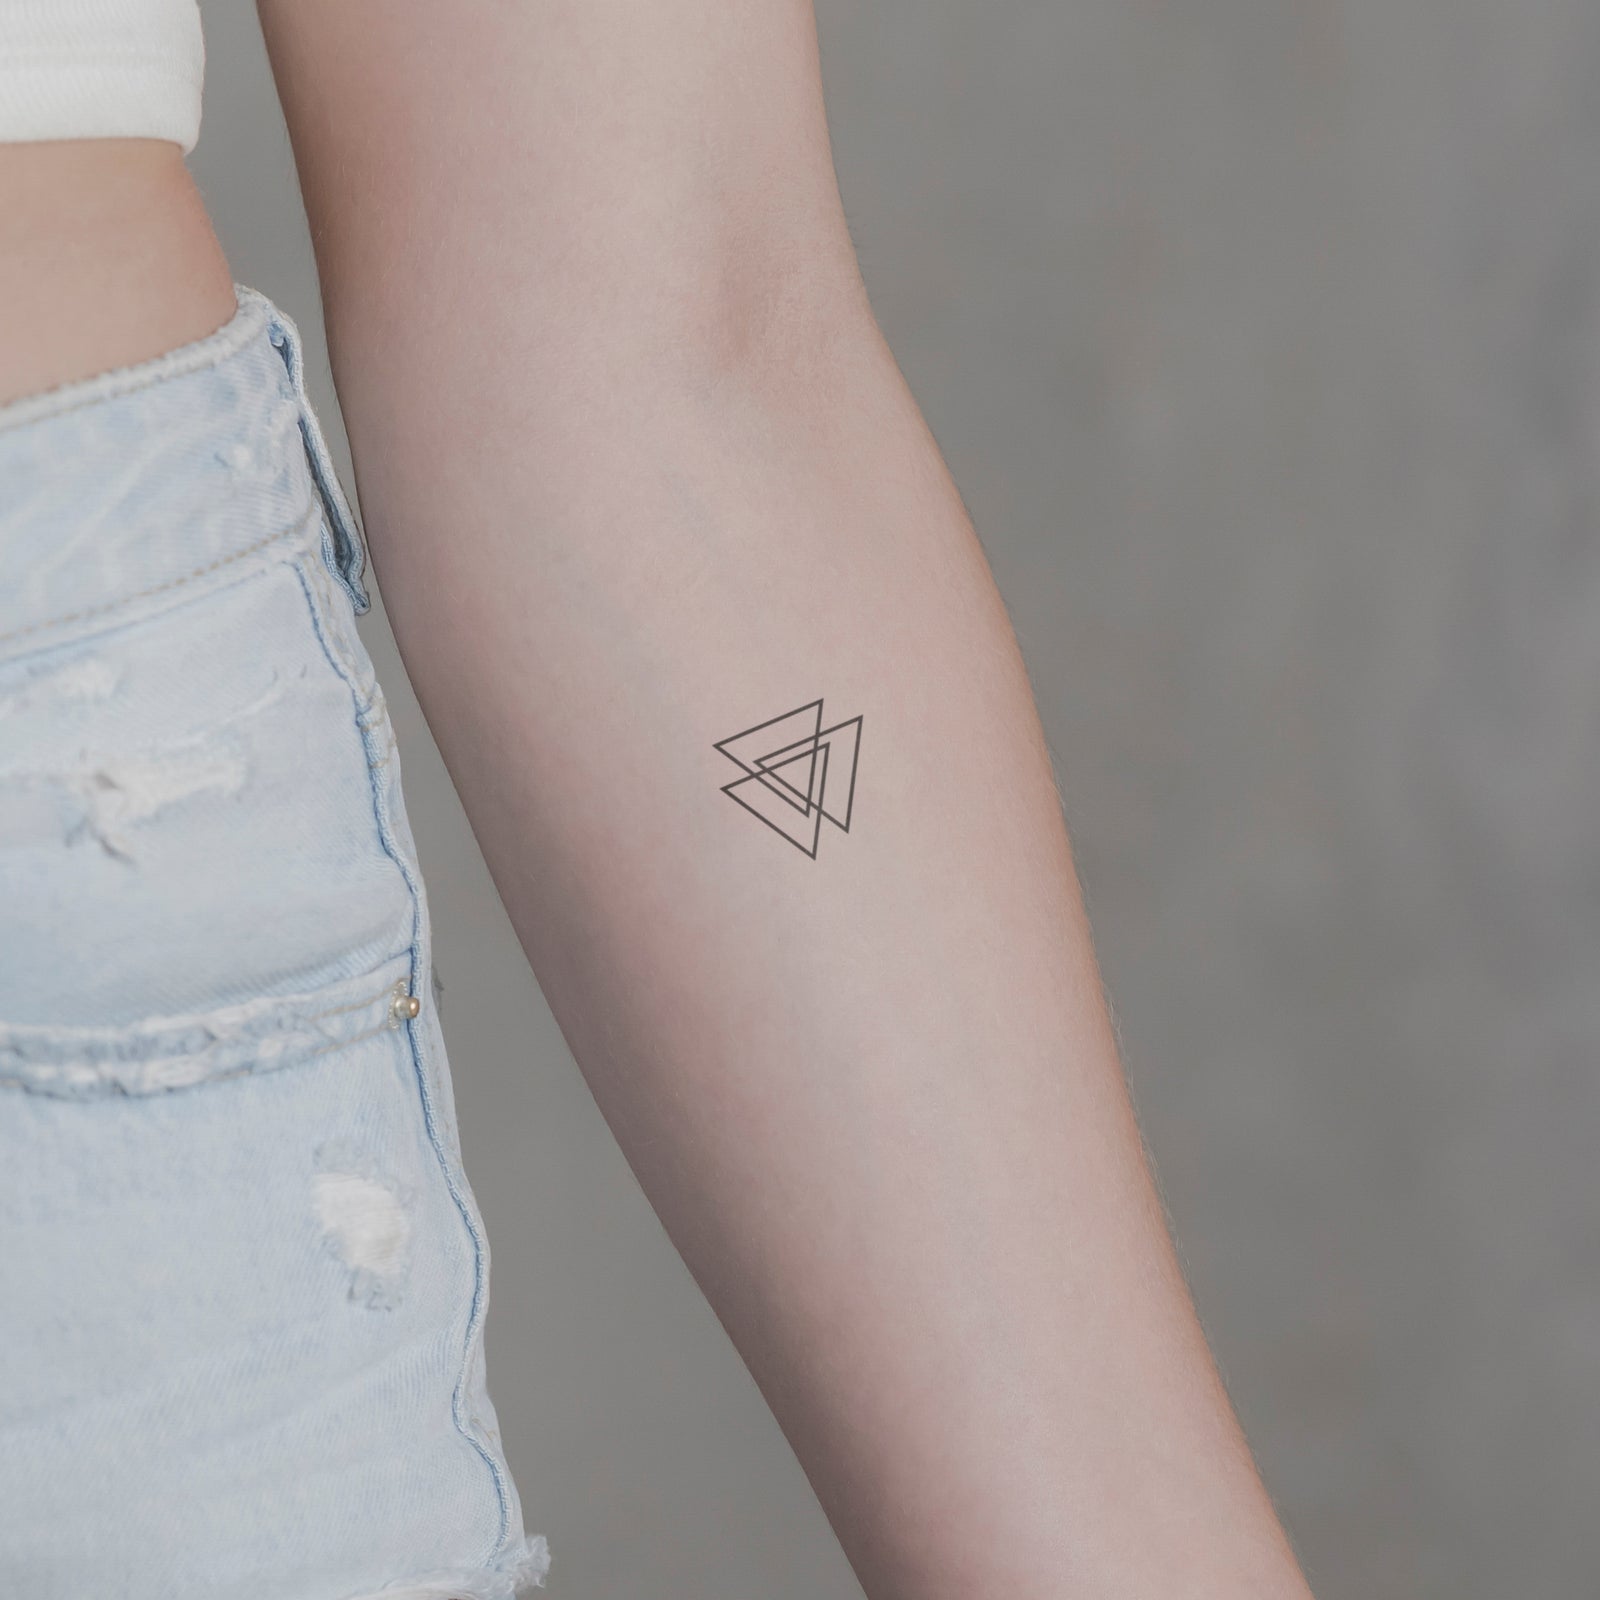 Pin by Gustav German on Art- Tattoo | Geometric triangle tattoo, Triangle  tattoos, Triangle tattoo